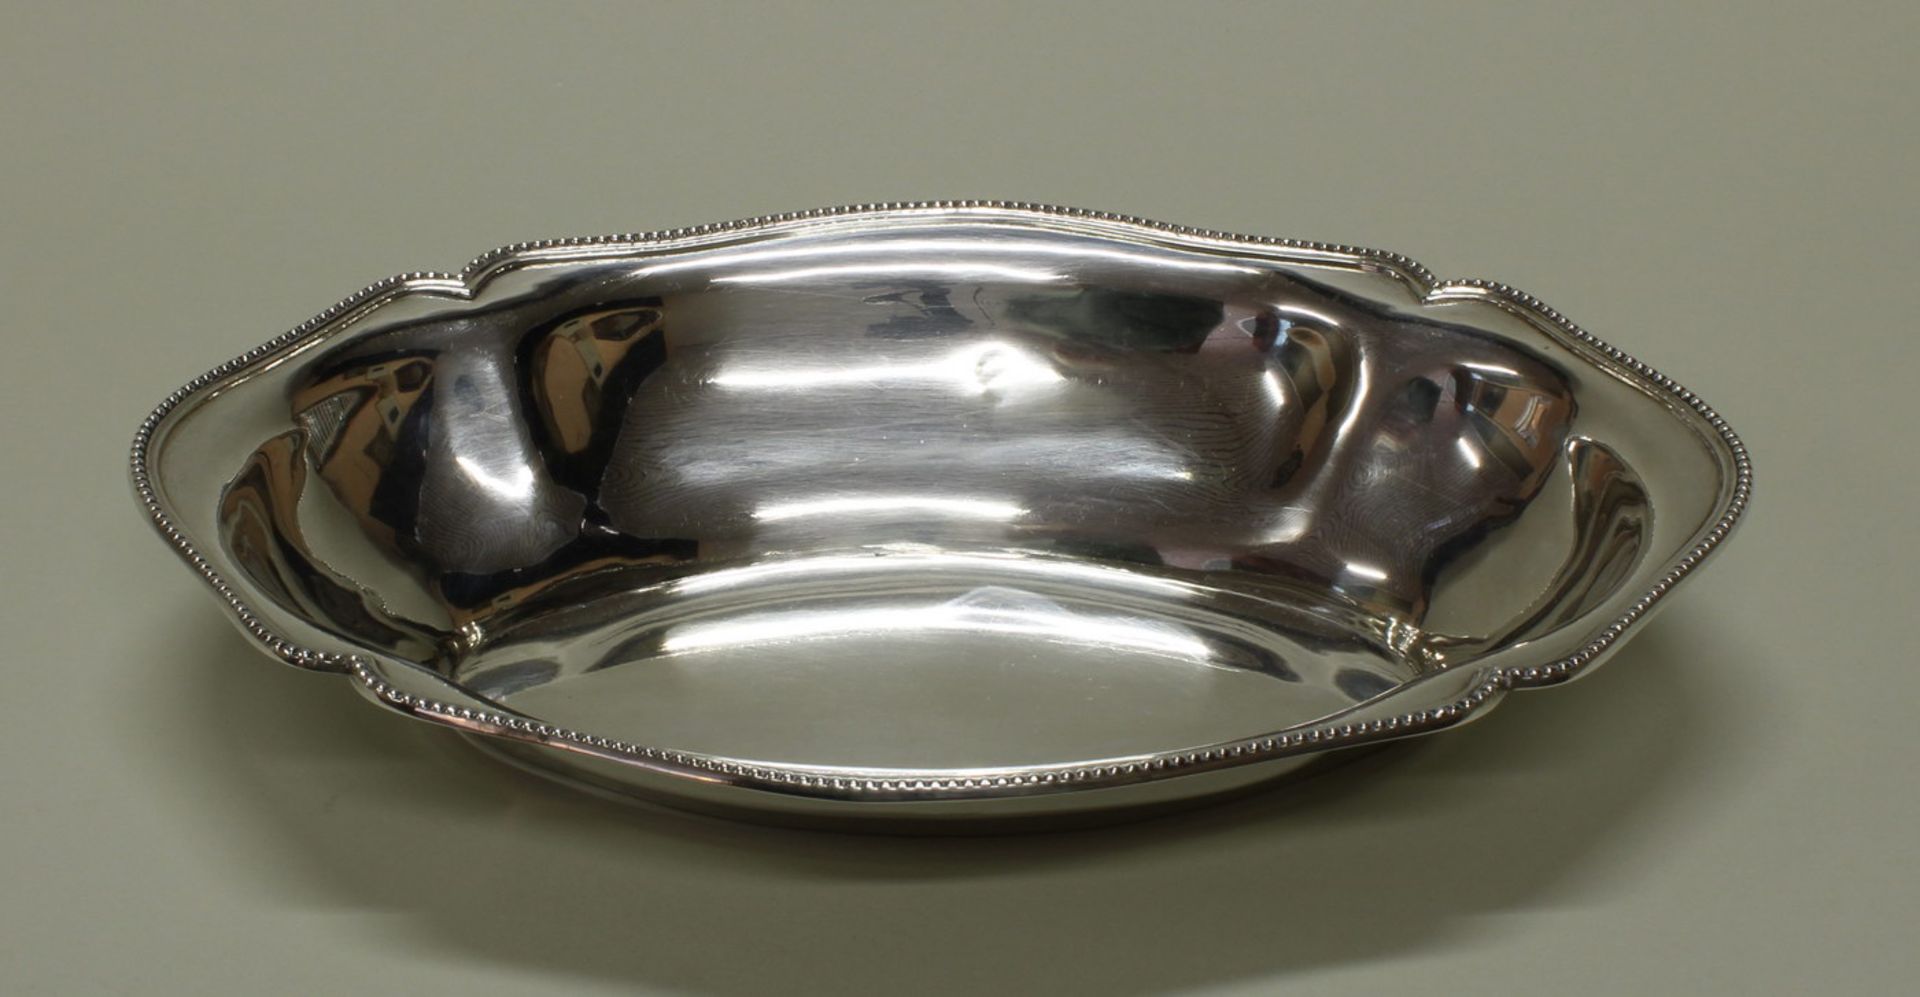 Schale, Silber, oval, vierpassig, Rand mit Perlschnur, am Boden umseitig Datumsgravur 9.2.1919, 5.